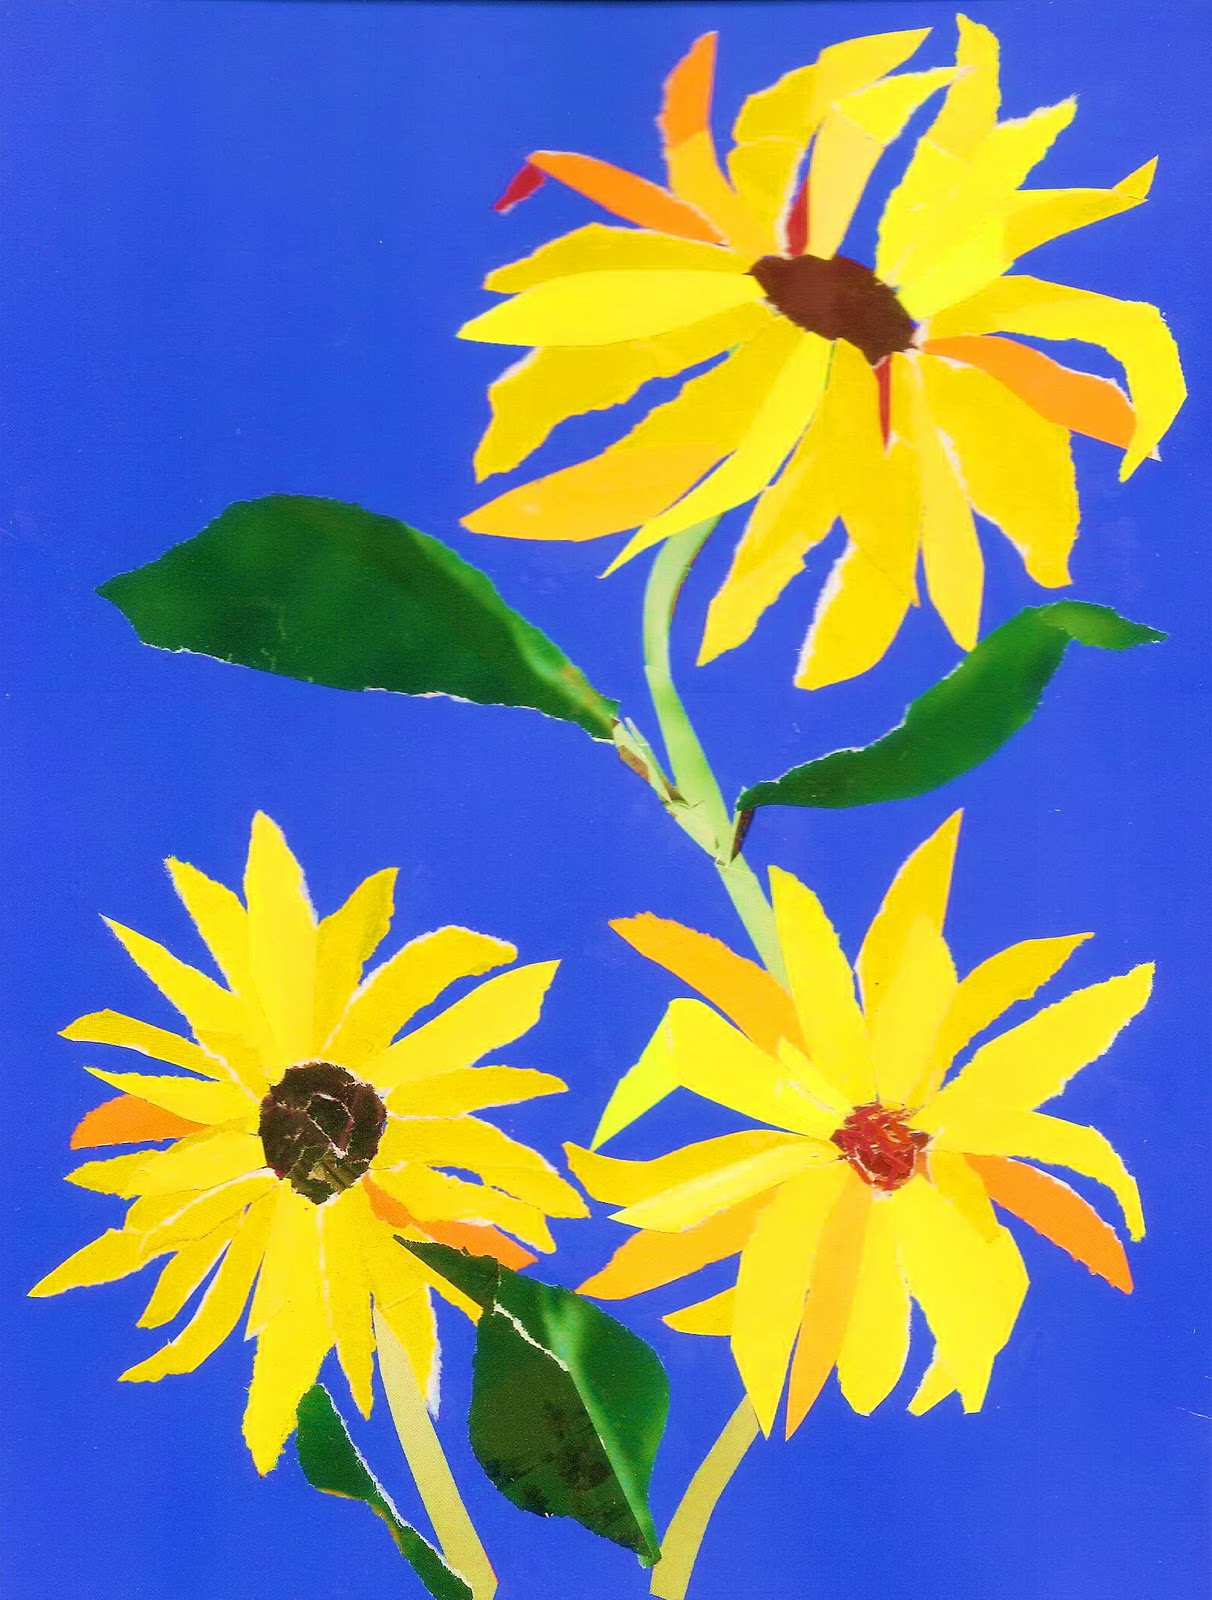 http://2.bp.blogspot.com/_KEAXTIqY5j0/TKB8ELeAbAI/AAAAAAAAAqQ/UZwDblik98I/s1600/Sunflowers1.jpg